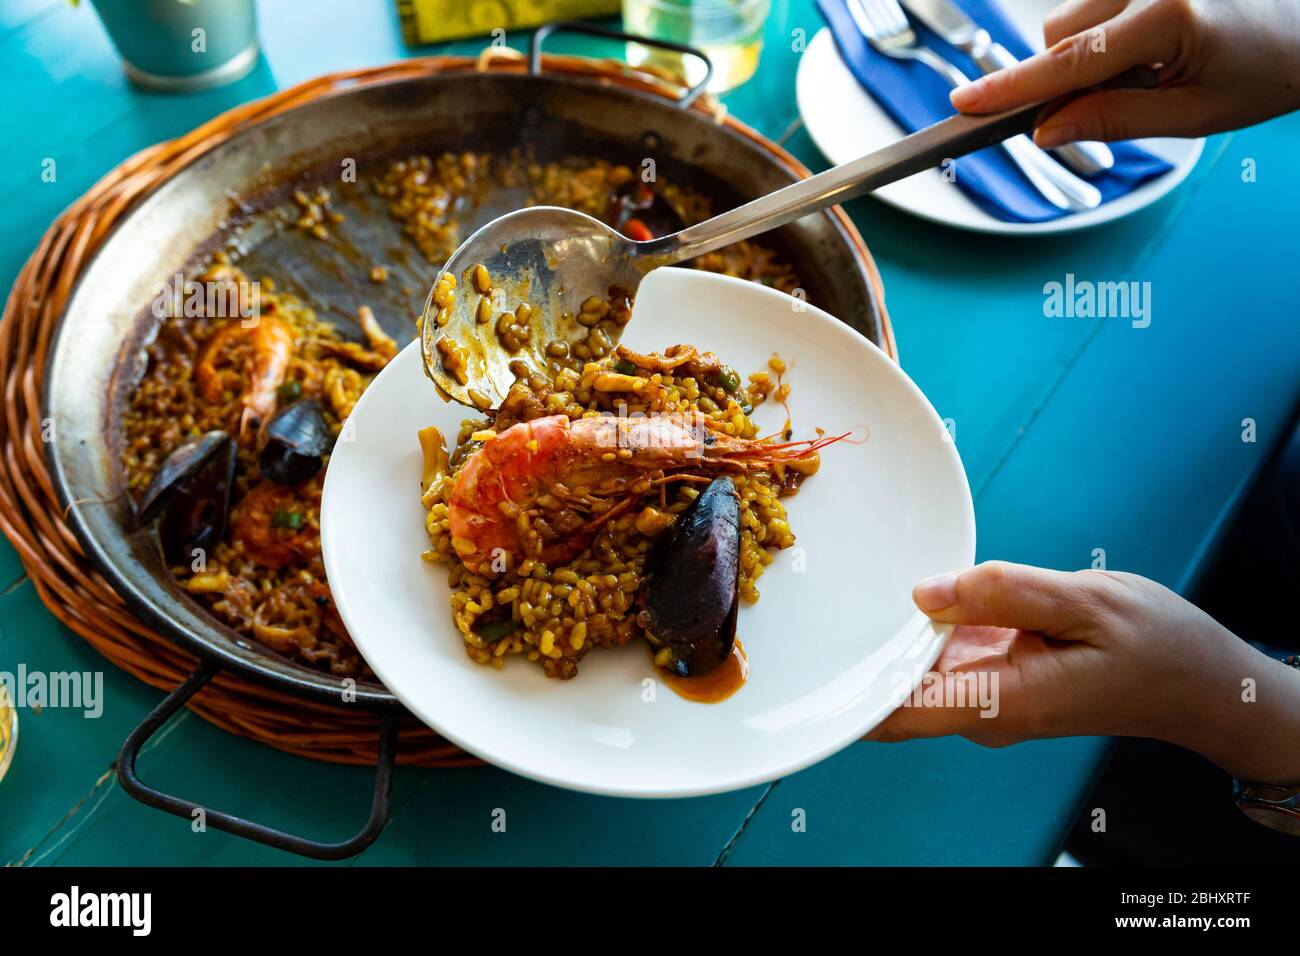 Cuisinez le menu de paella appétissante aux fruits de mer avec des crevettes et des moules Banque D'Images